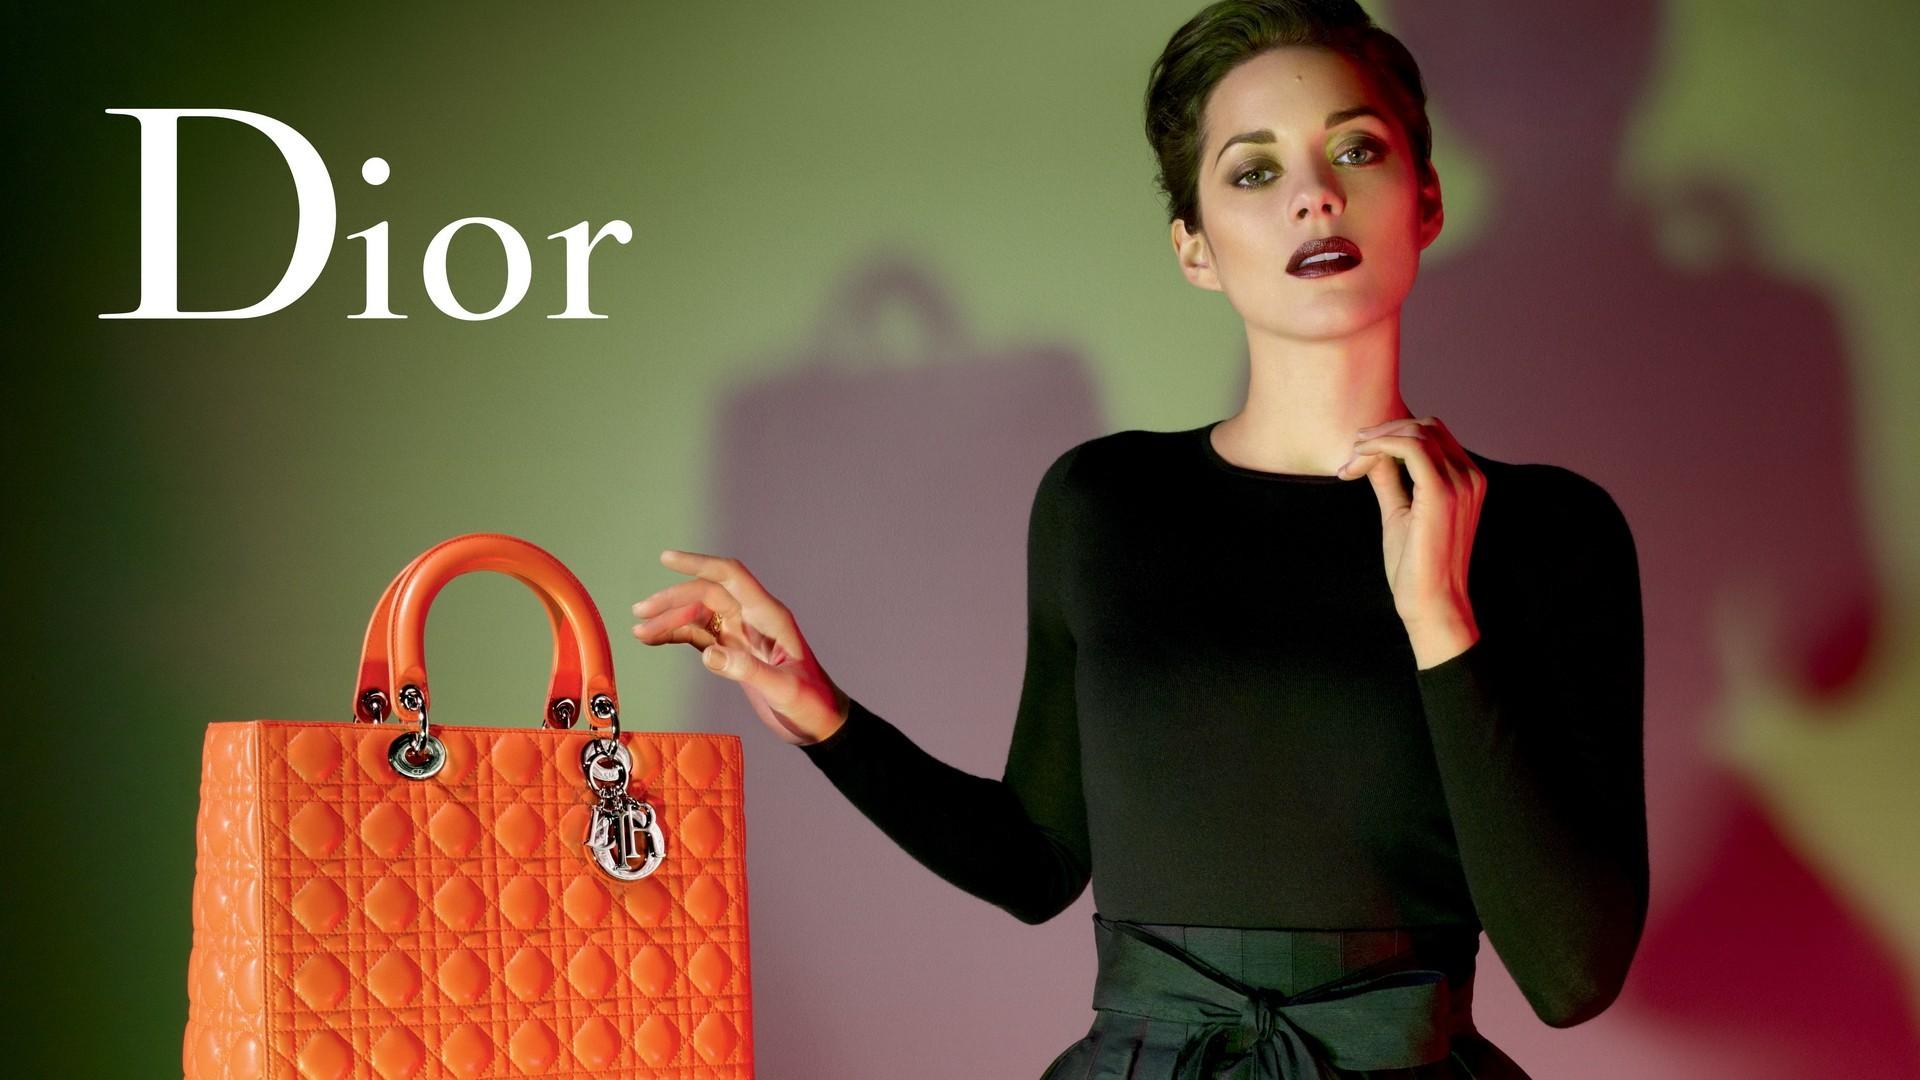 Dior Homme, Model, Messenger Bag, Bag, Brand HD Wallpaper, Brands.